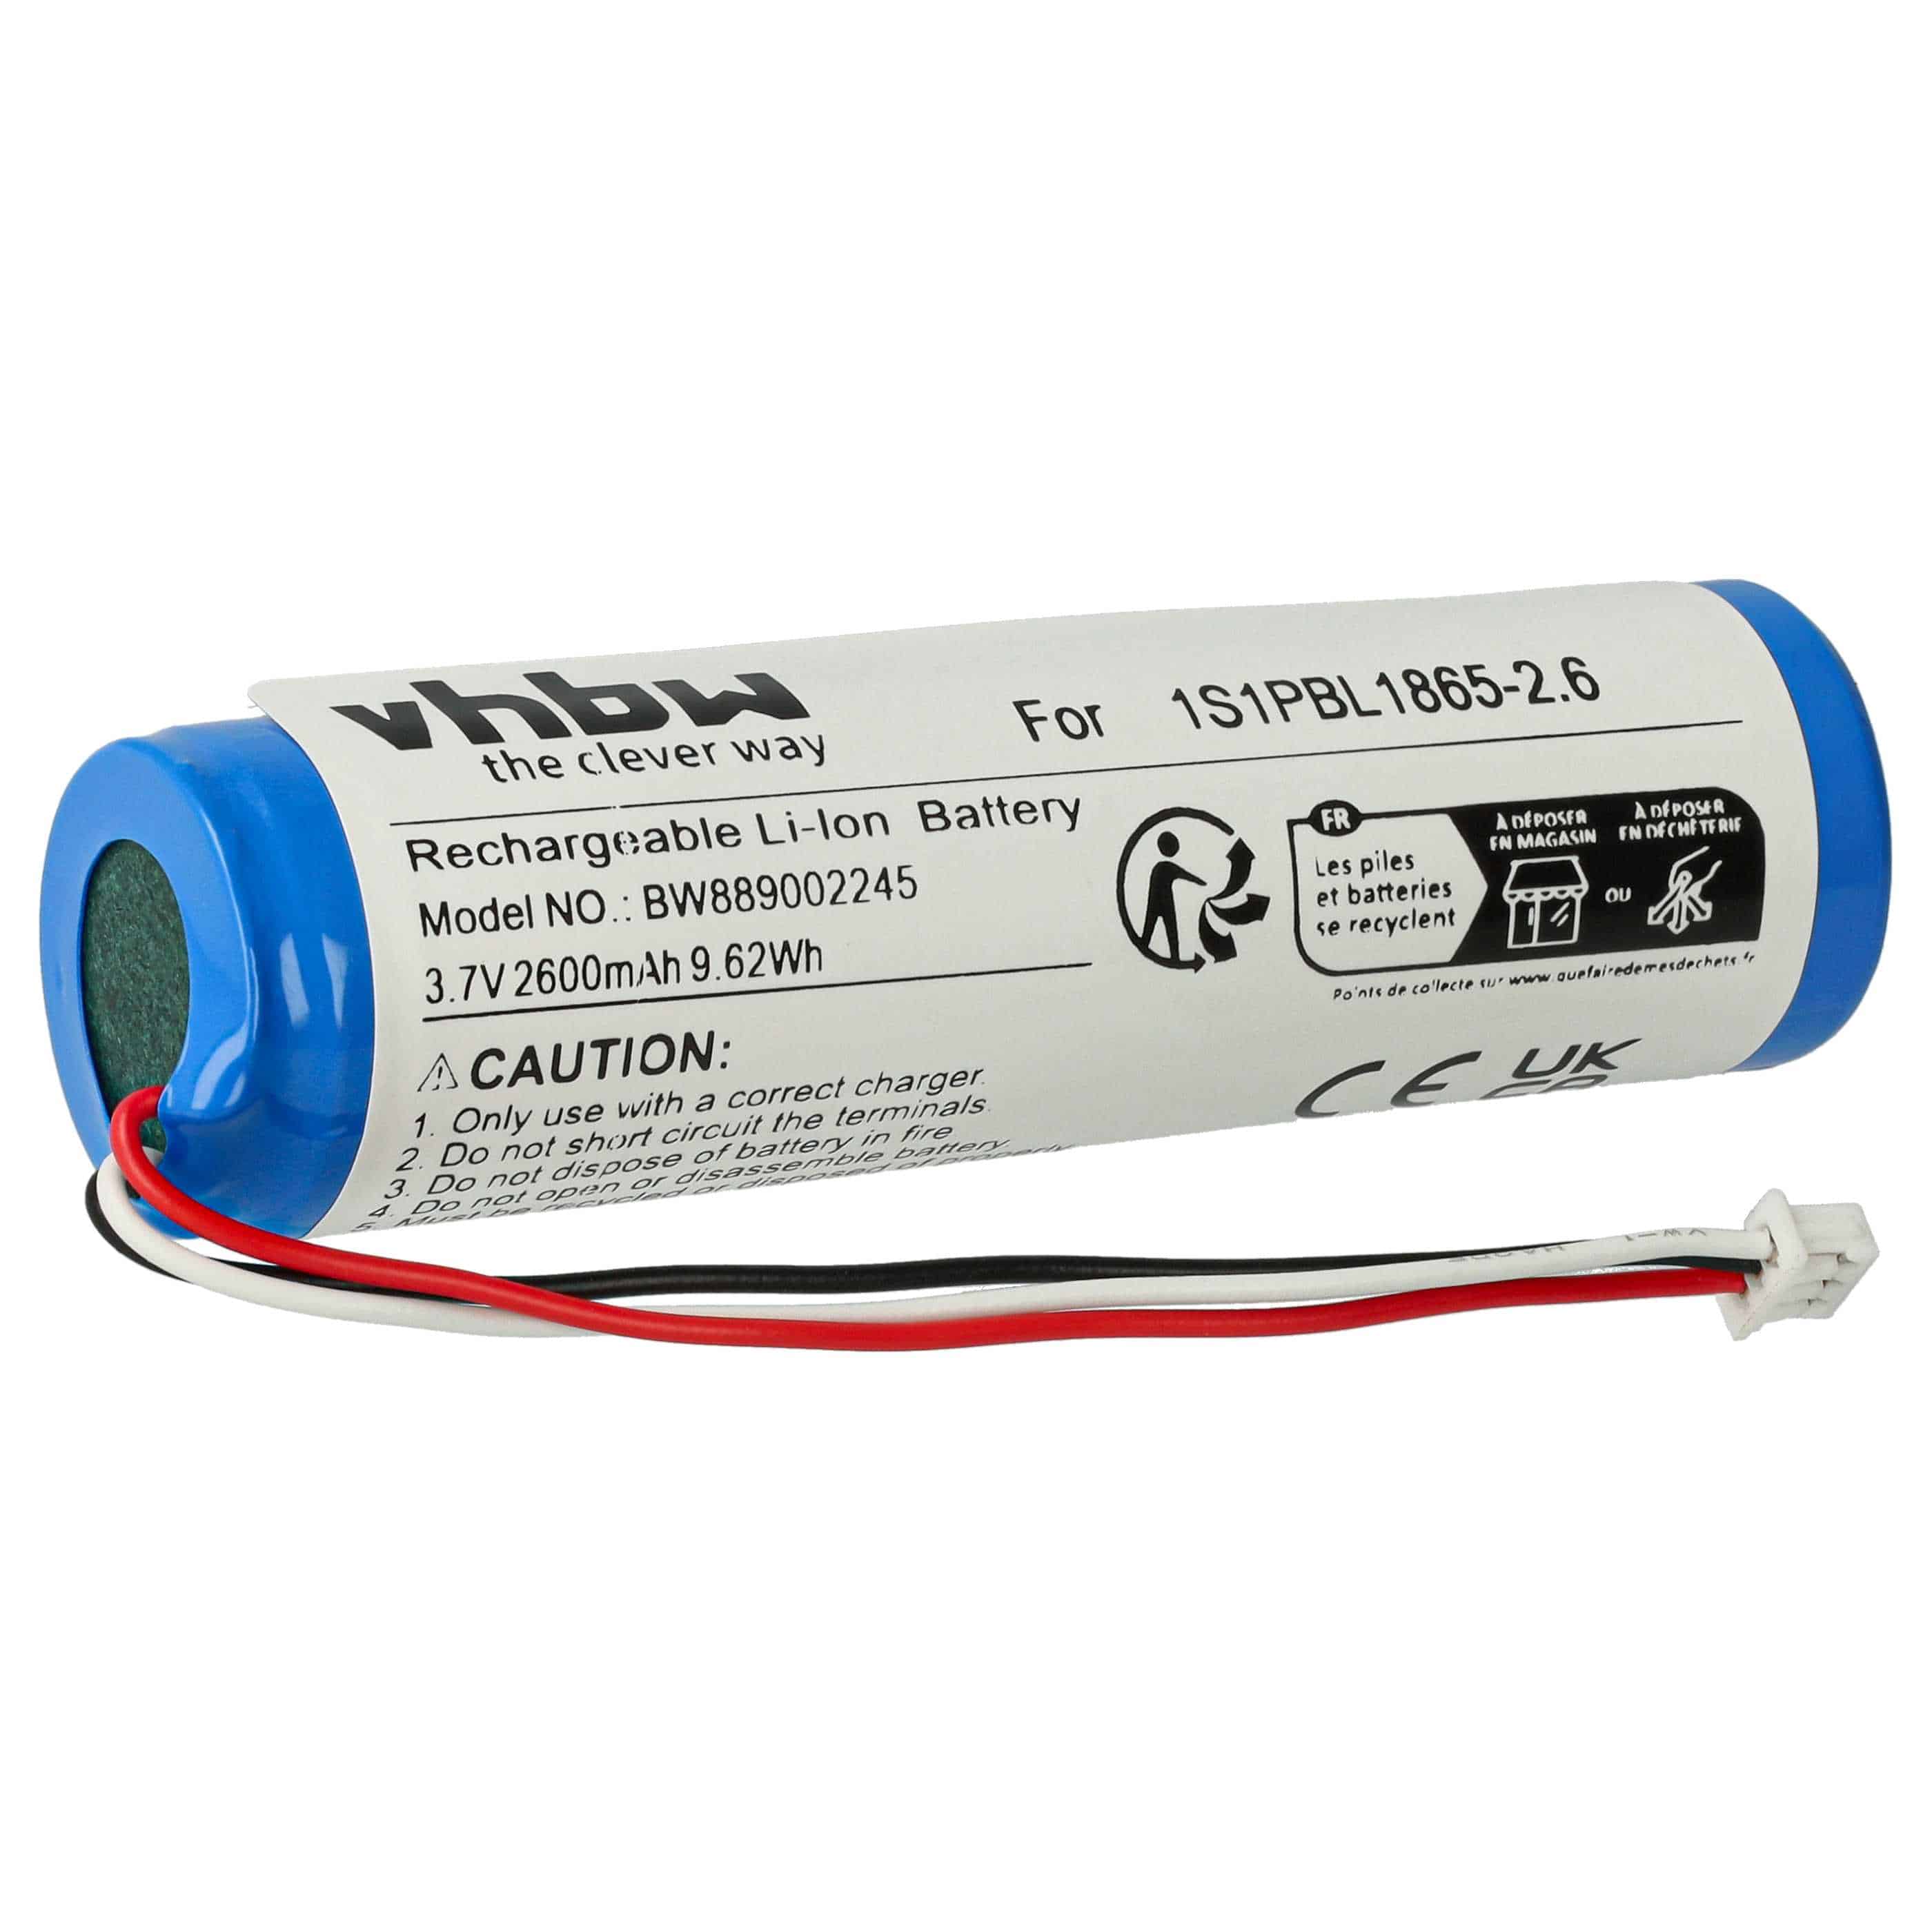 Batterie remplace Philips 1S1PBL1865-2.6 pour moniteur bébé - 2600mAh 3,7V Li-ion